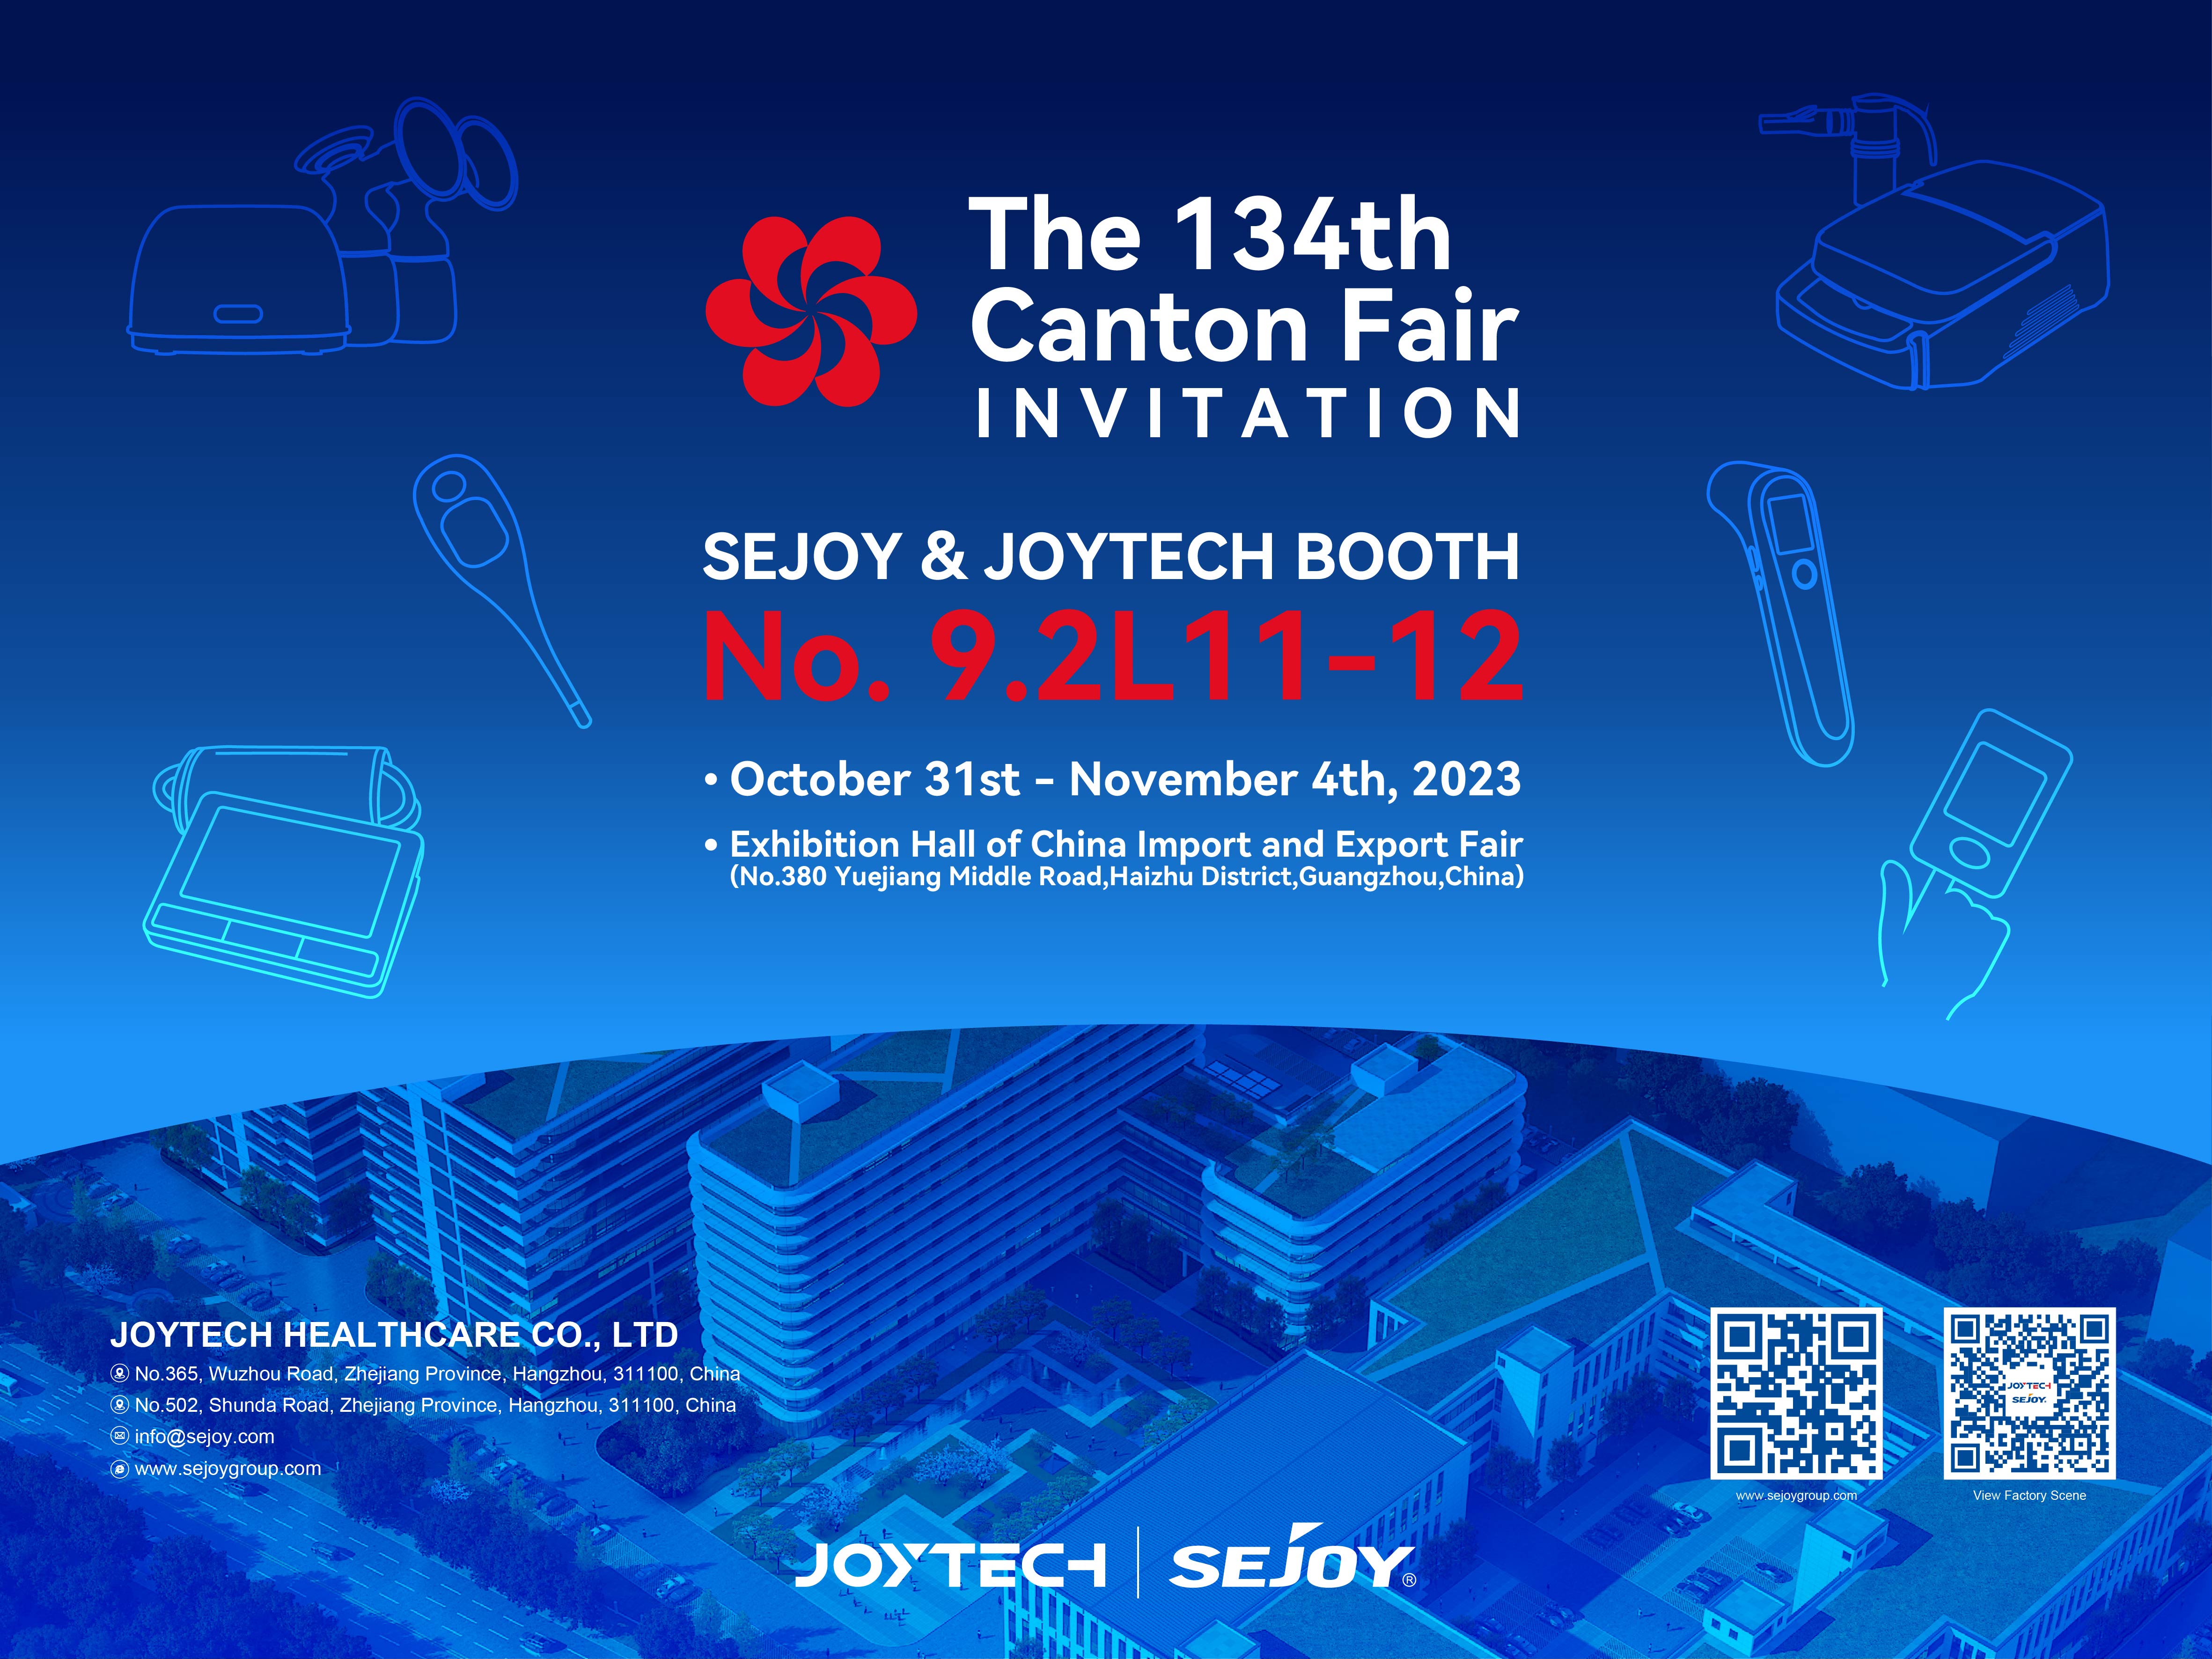 Die Sejoy Group lädt Sie ein, auf der 134. Canton Fair modernste medizinische Geräte und POCT-Produkte zu entdecken